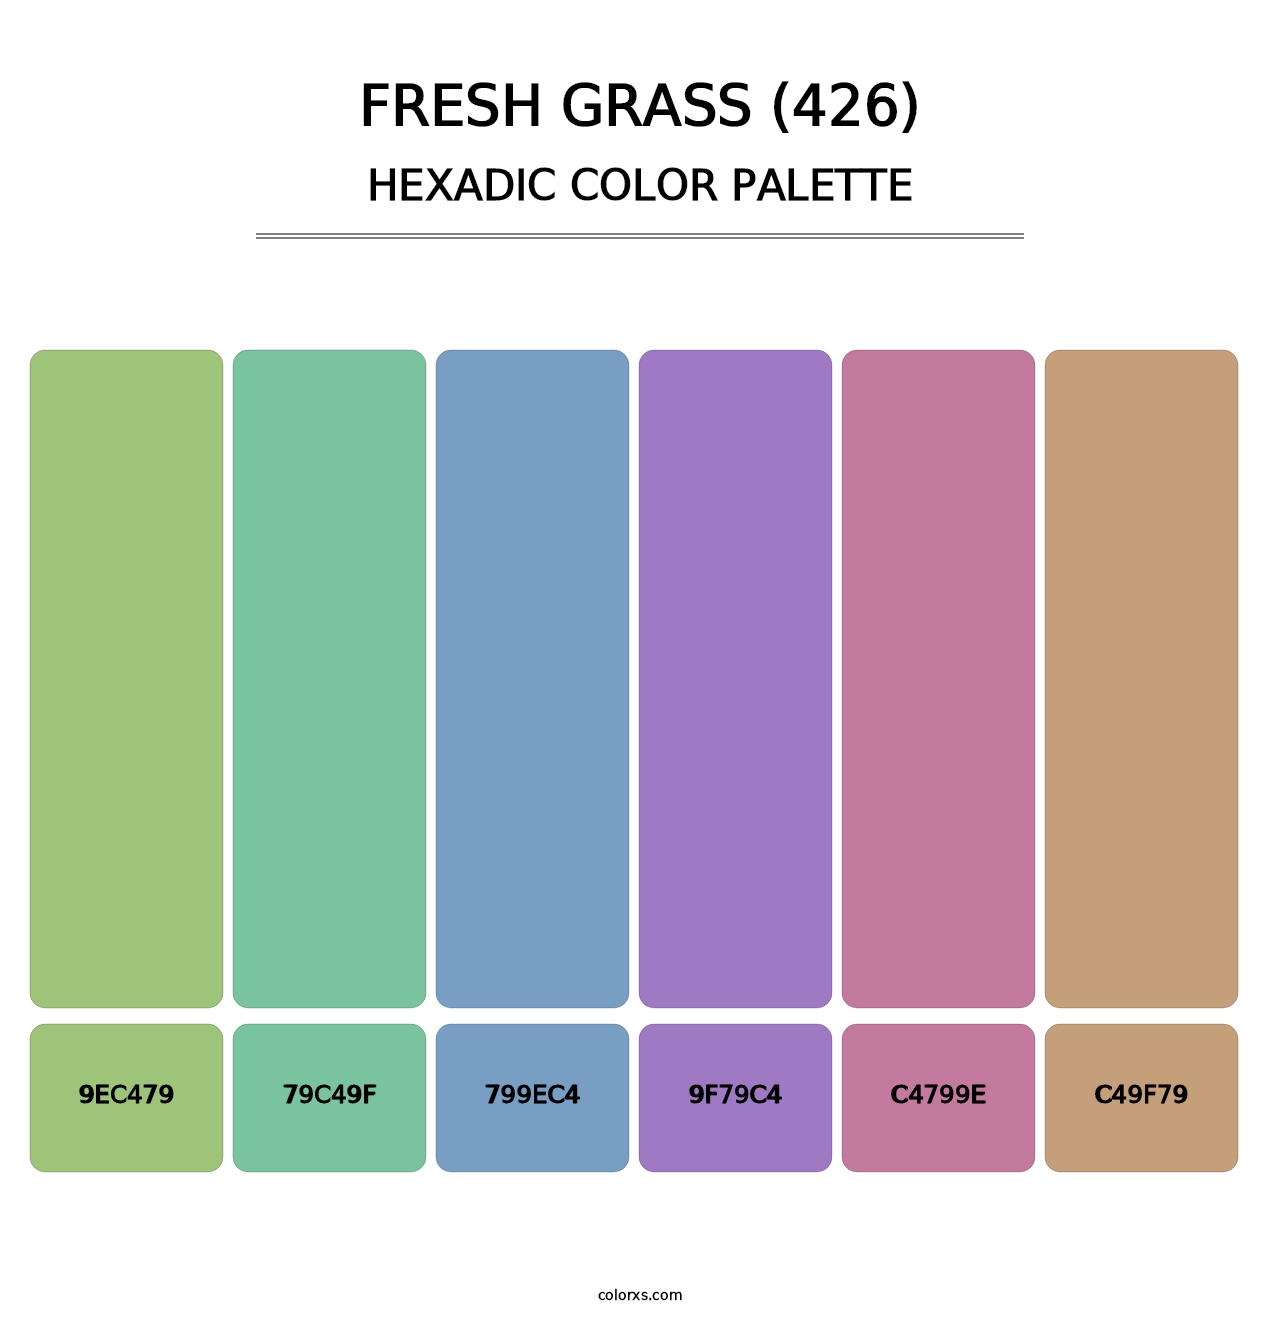 Fresh Grass (426) - Hexadic Color Palette